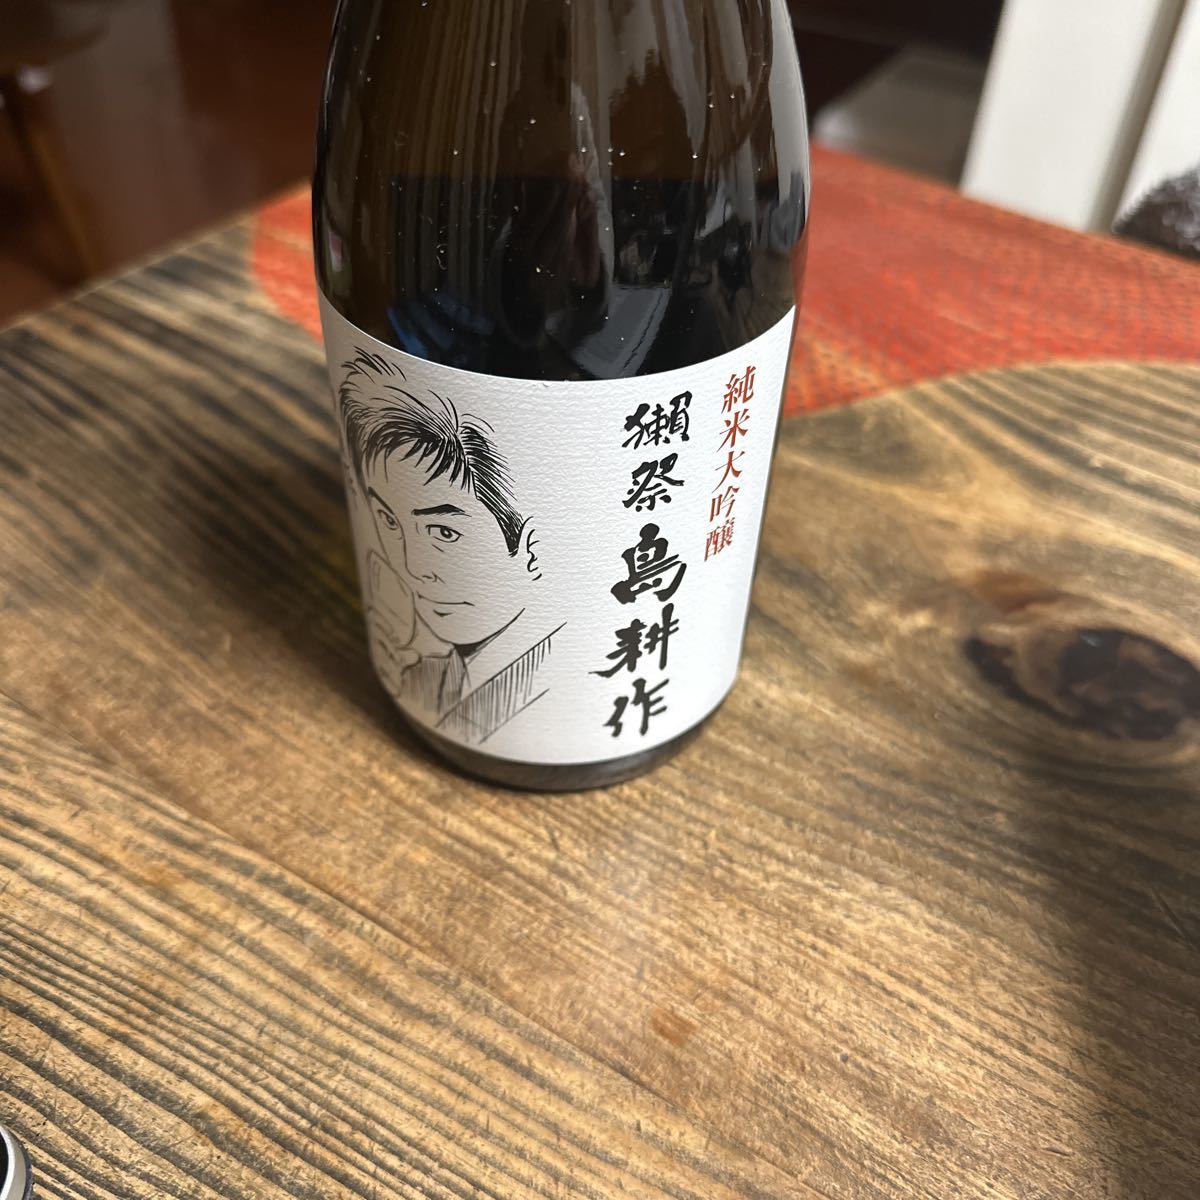 * не . штекер * дзюнмаи сакэ большой сакэ гиндзё *. праздник * остров . произведение * сотрудничество *720ml* японкое рисовое вино (sake) *....*16 раз * asahi sake структура * старый sake 